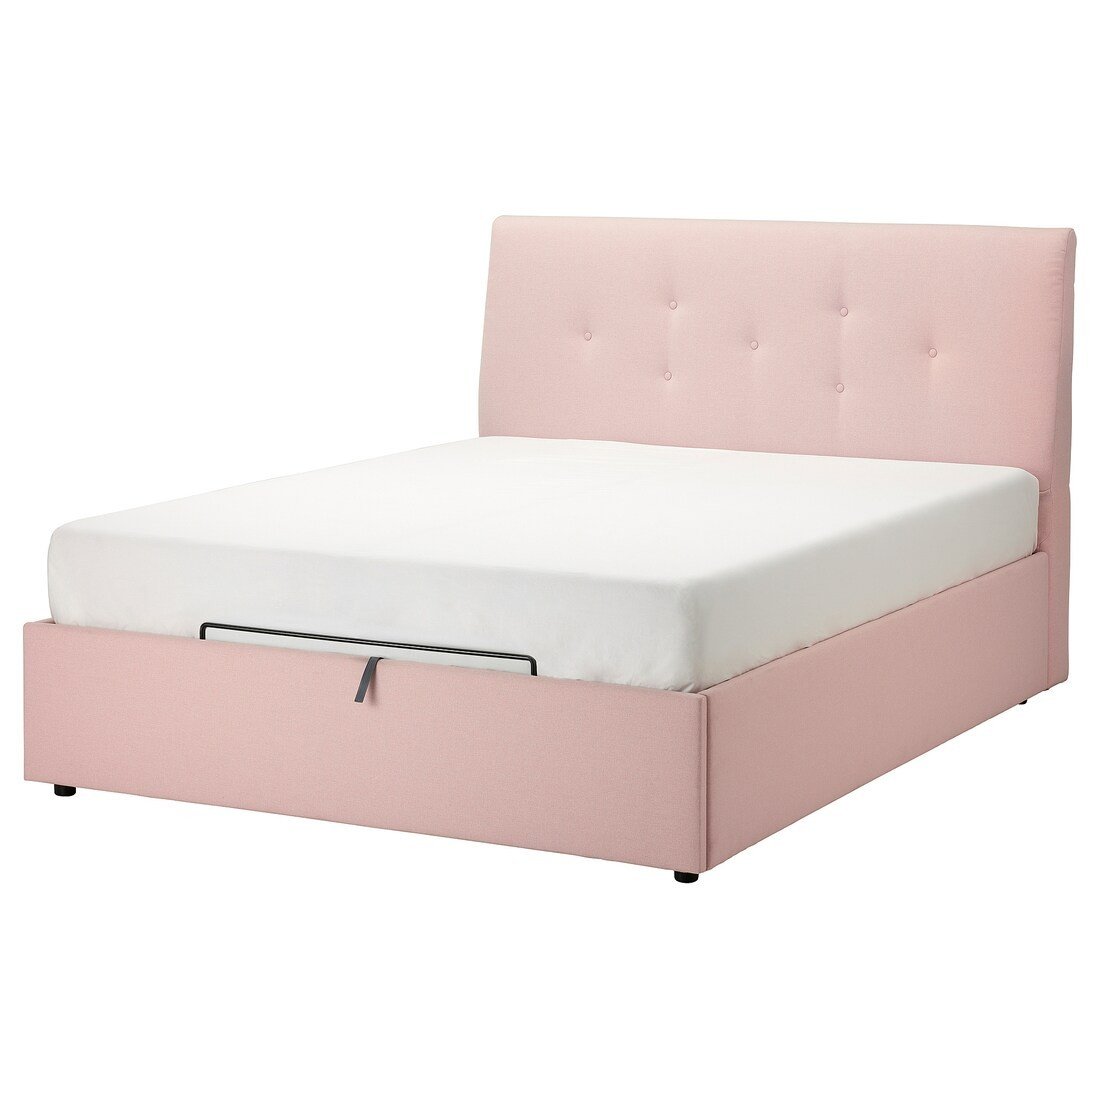 IDANÄS ІДАНЕС Ліжко двоспальне з підйомним механізмом, Gunnared ніжно-рожевий, 160x200 см